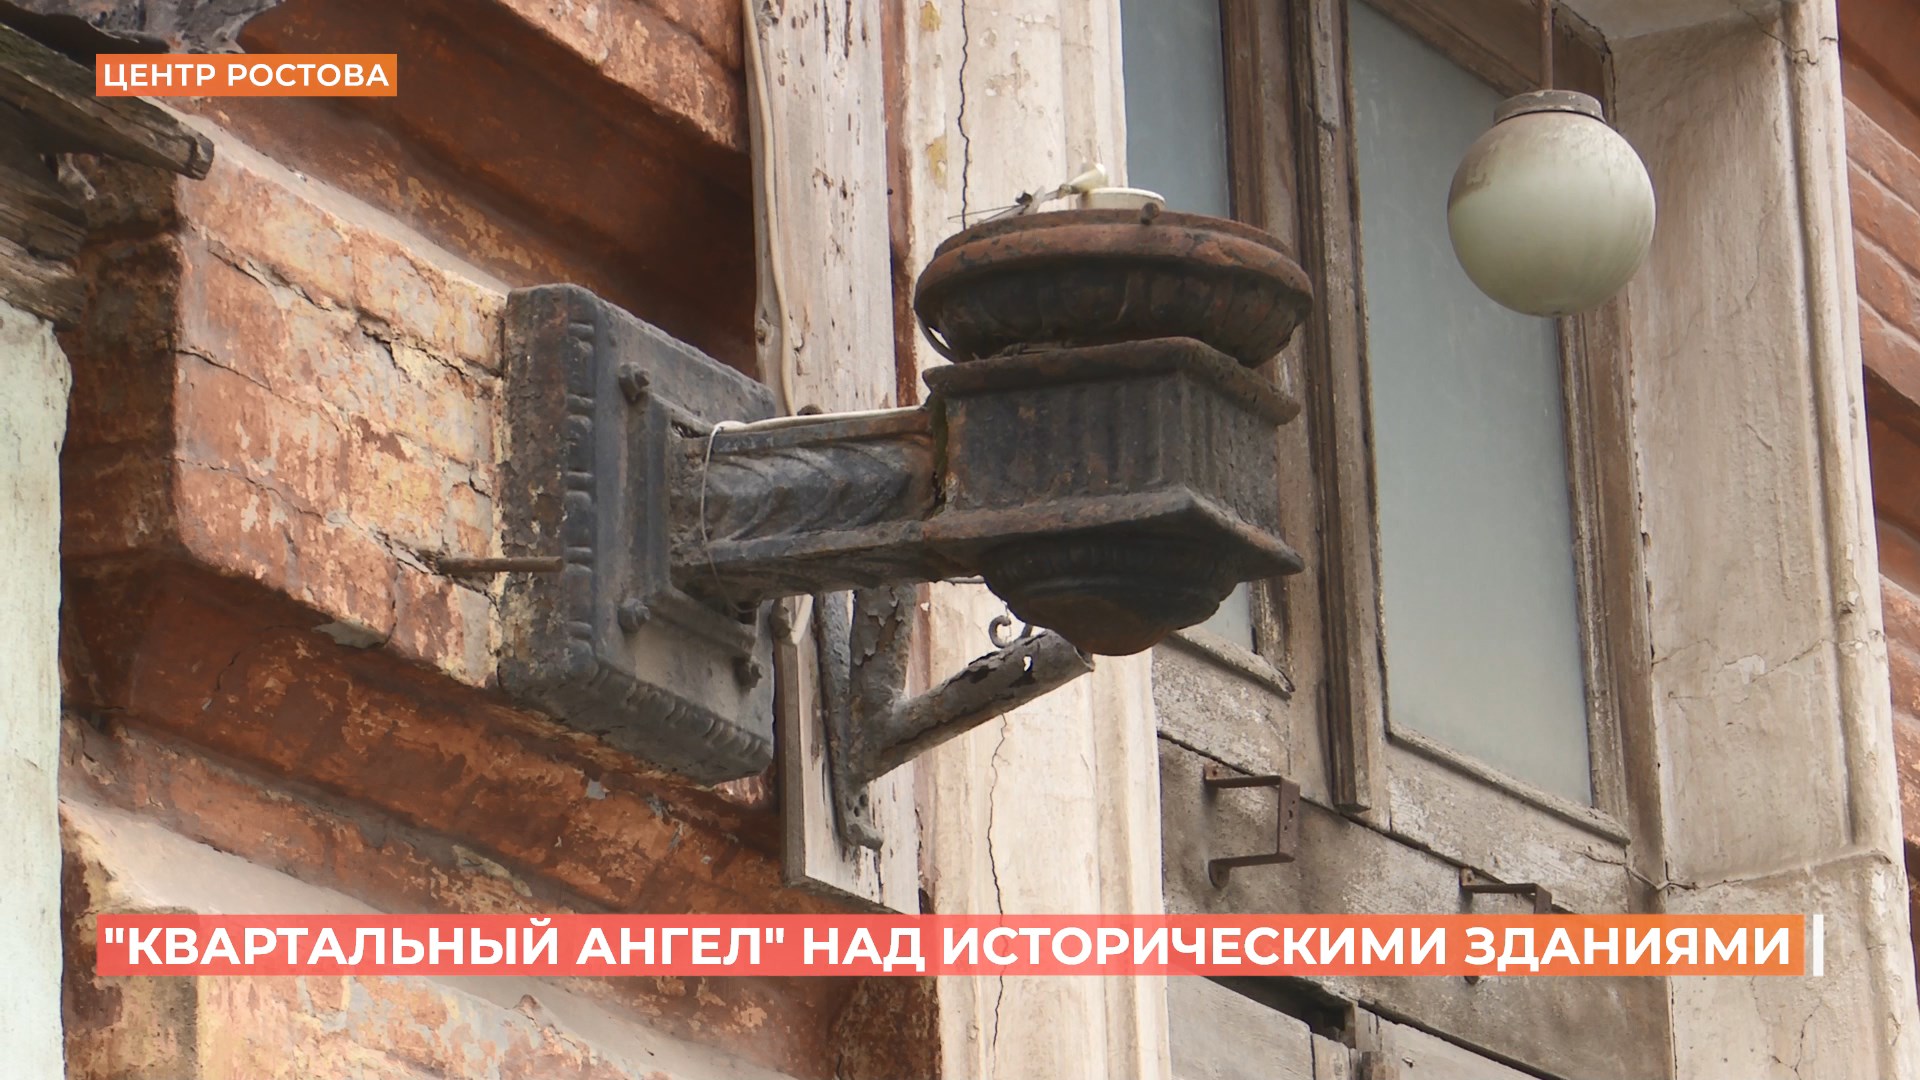 Бесплатные экскурсии: «Квартальный ангел» накрыл своими крыльями квартал в центре Ростова